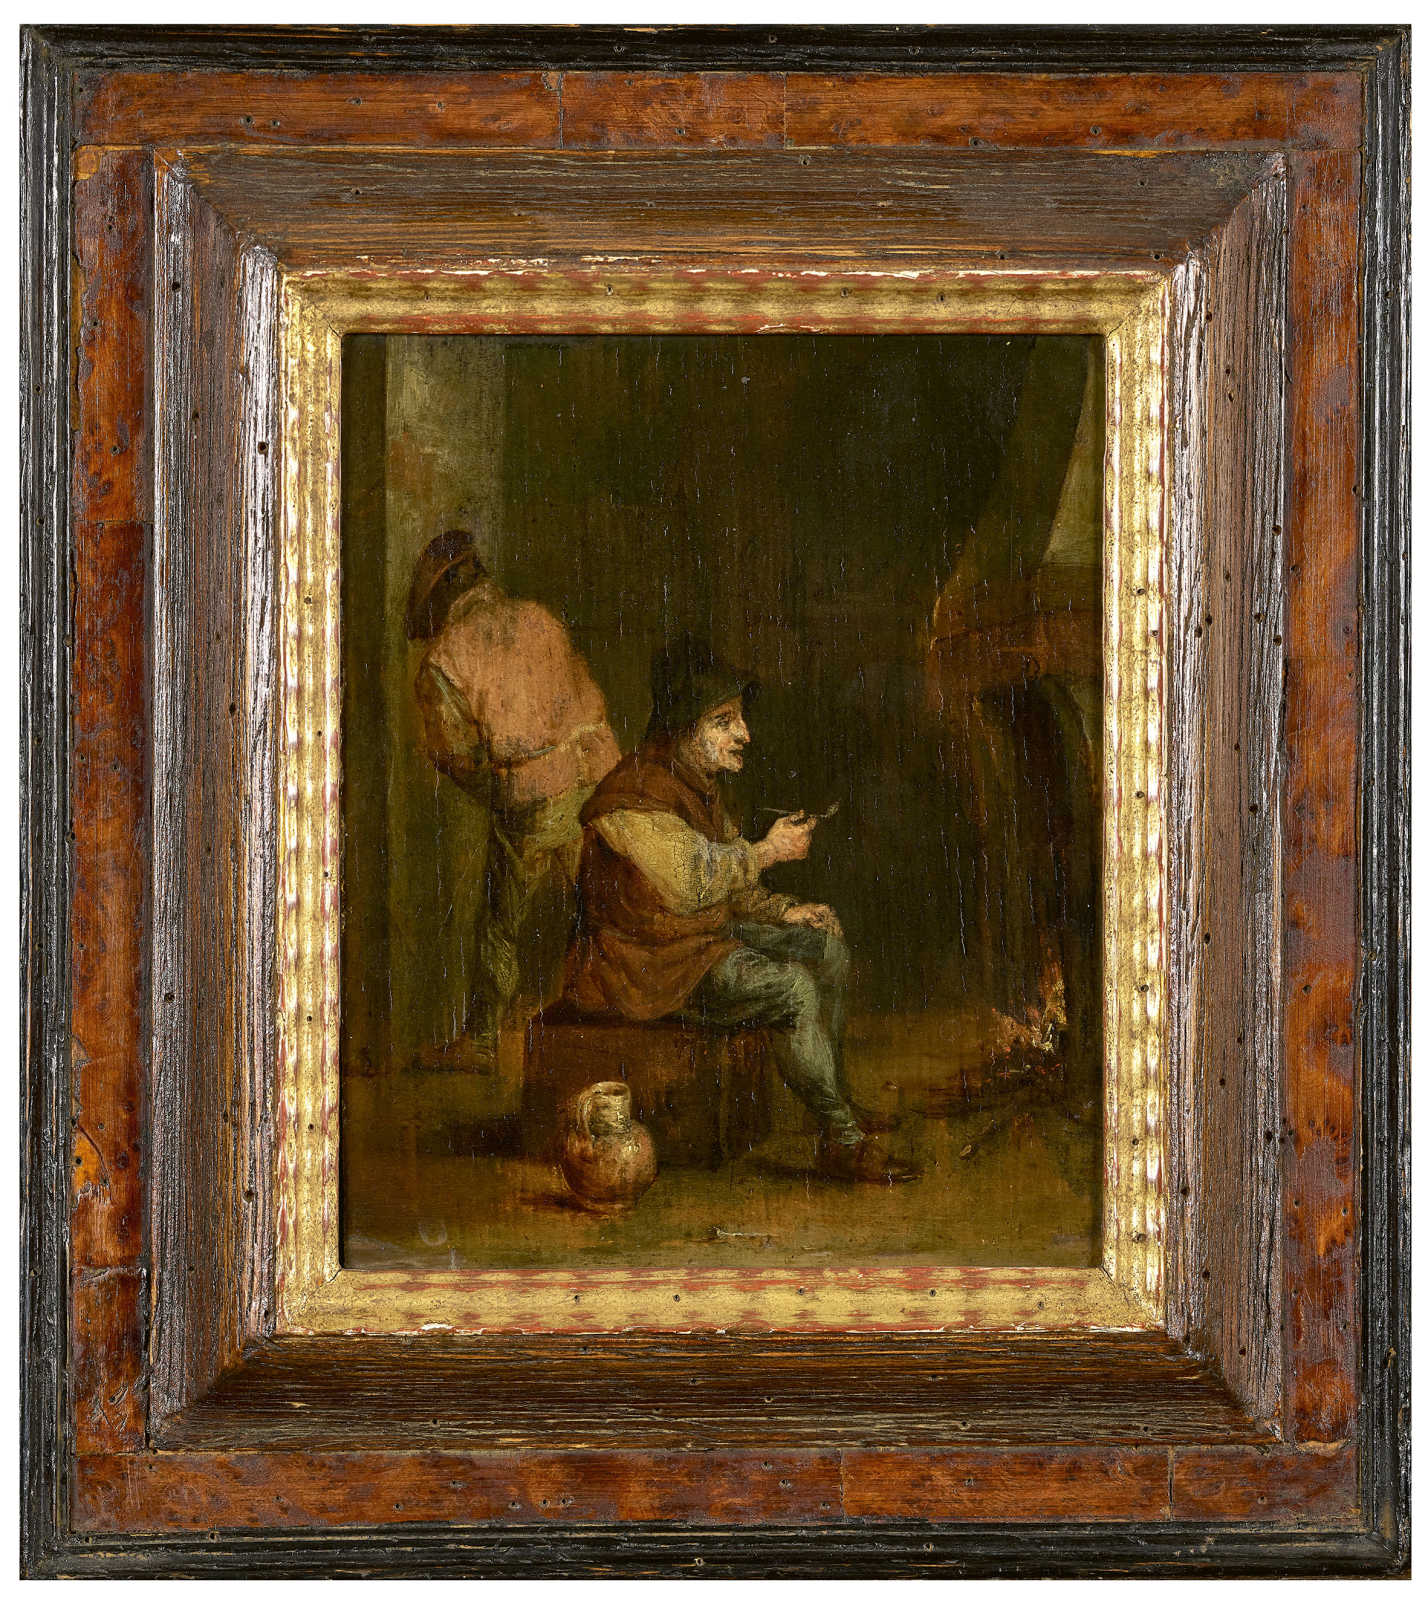 TENIERS, DAVID IIAntwerpen 1610 - 1690 BrüsselKopiePfeifenraucher am Kaminfeuer.Öl auf Eichenholz, - Image 2 of 5